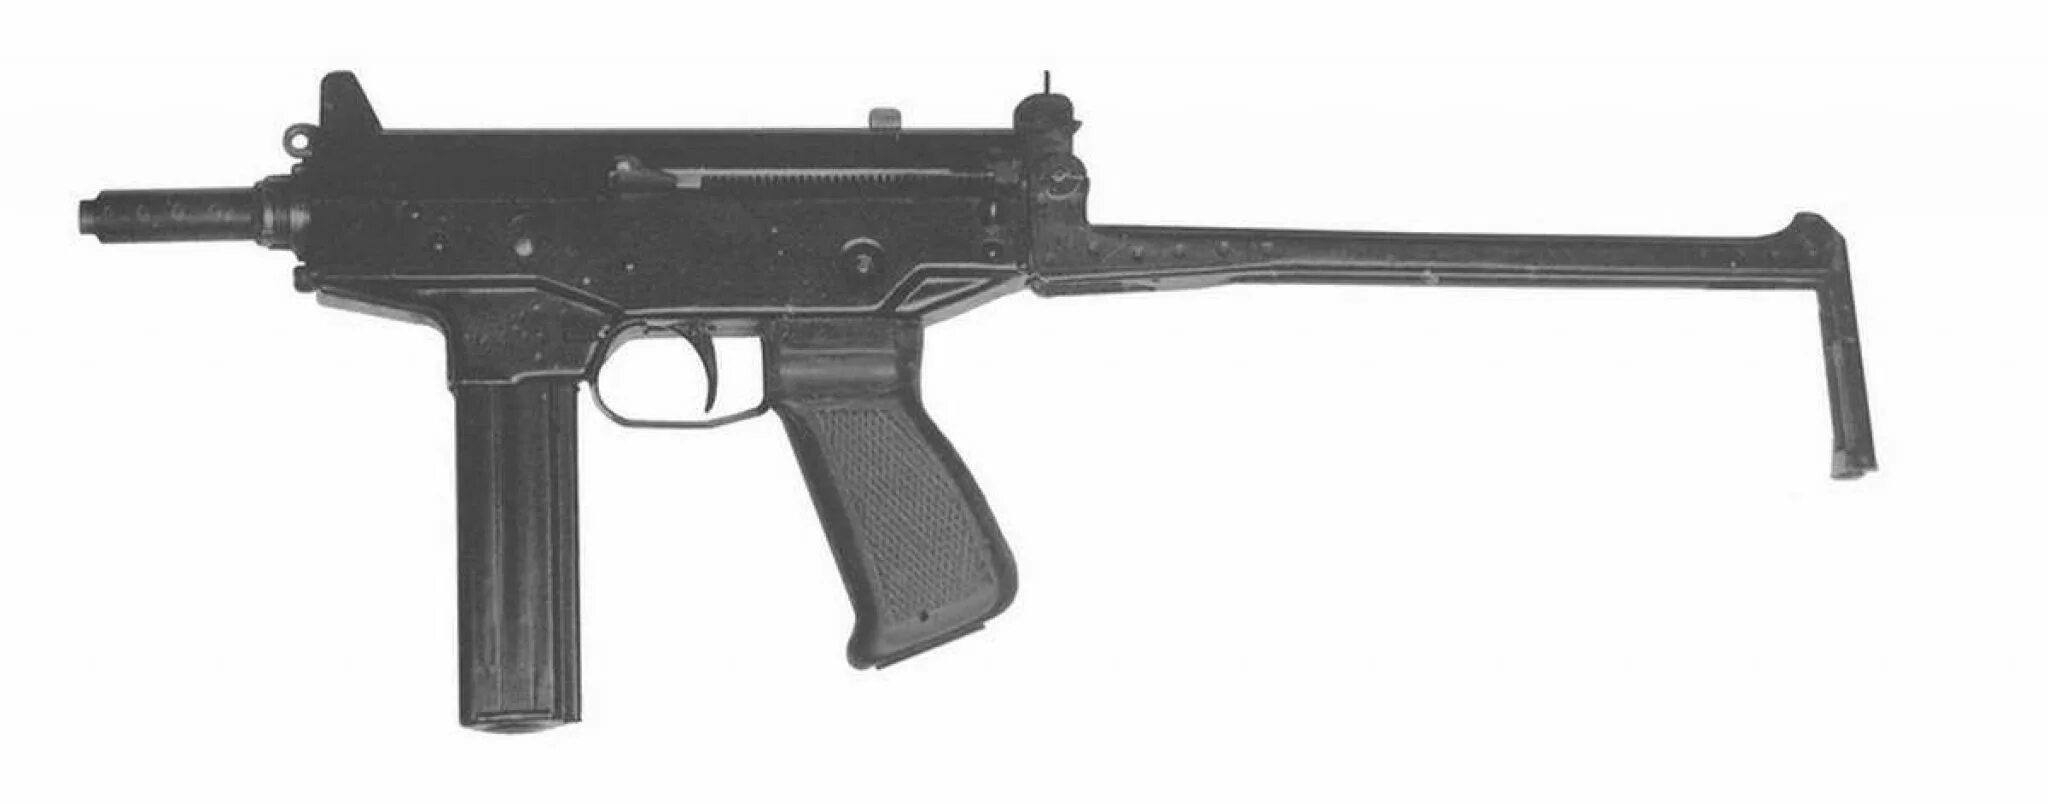 ПП 71. Оружие СССР. ПП со сложенным прикладом. ПП 71 модель.